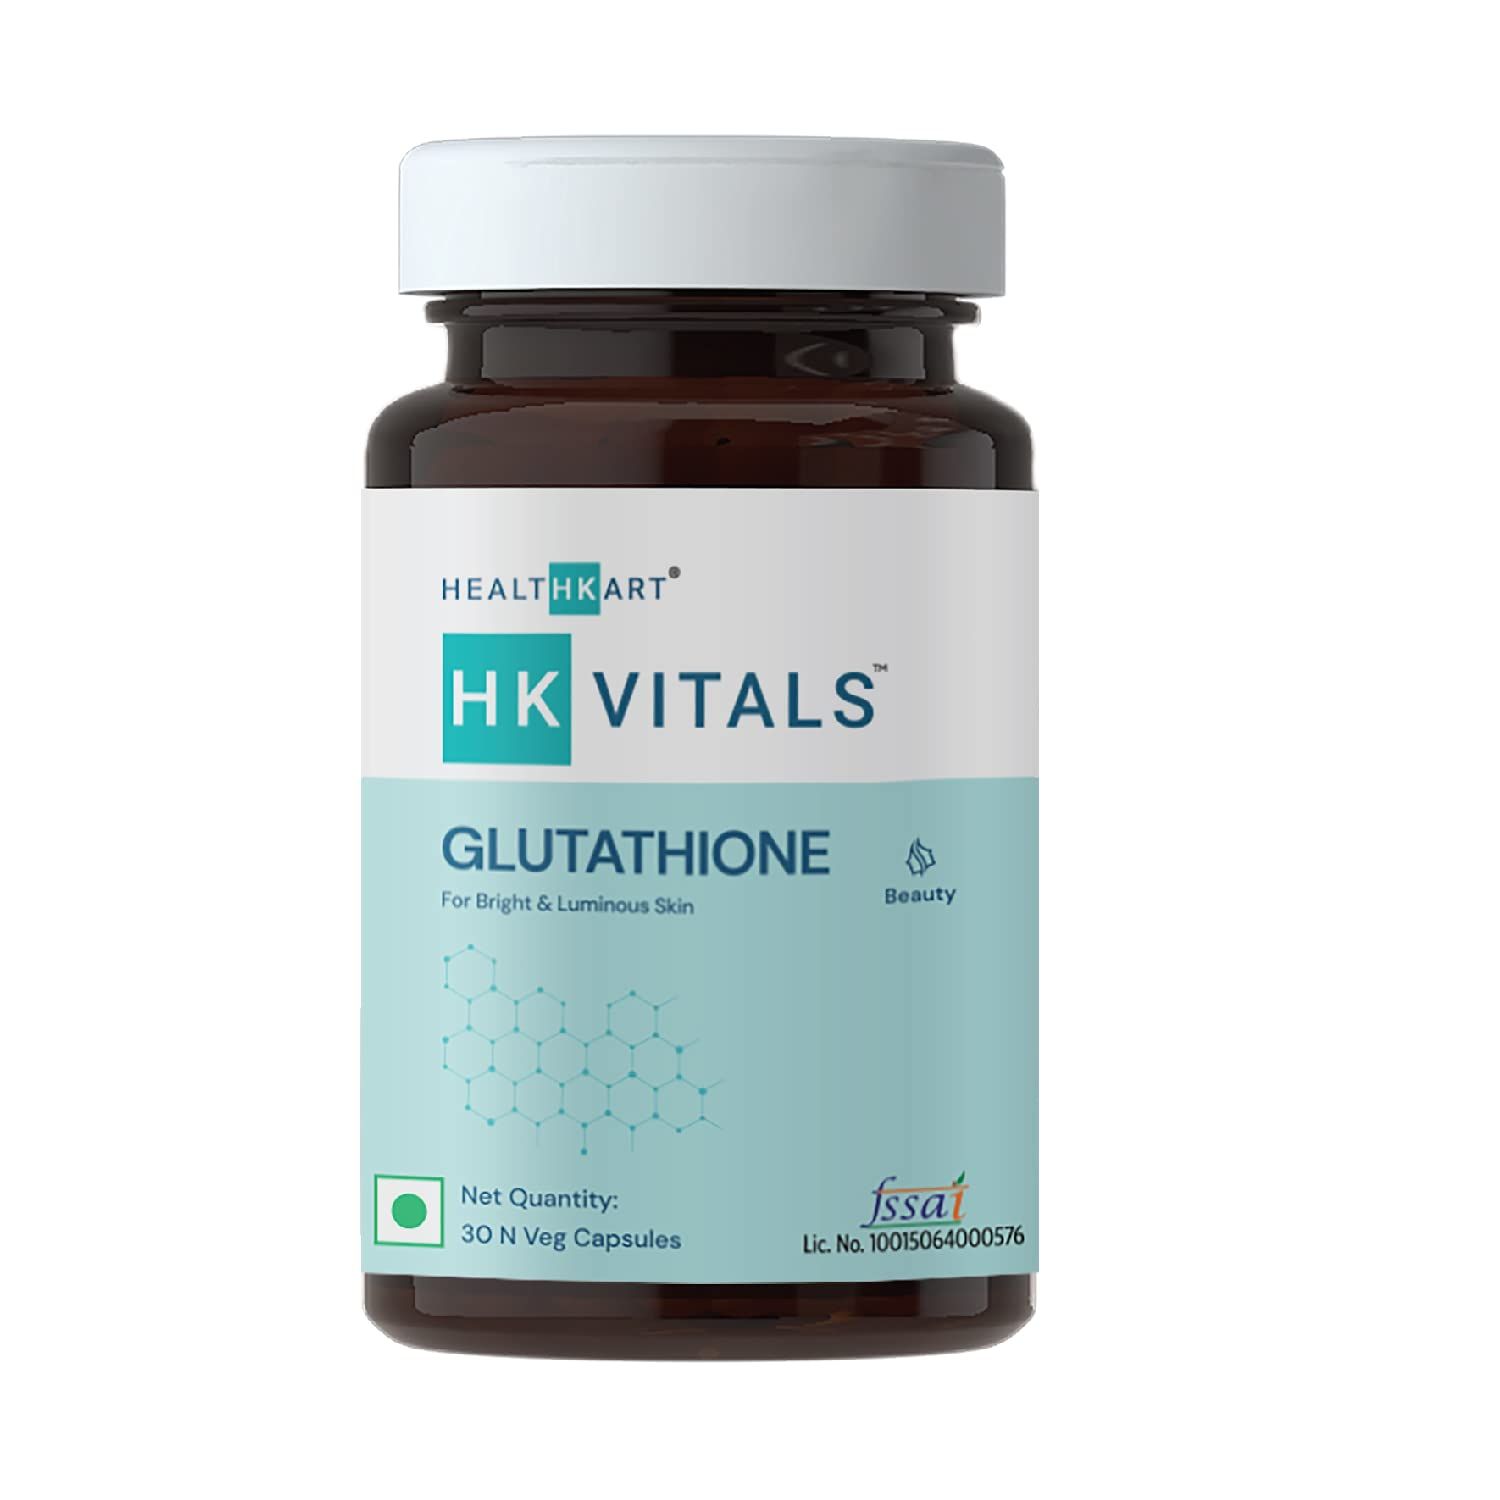 HK Vitals Glutathione Capsules Image